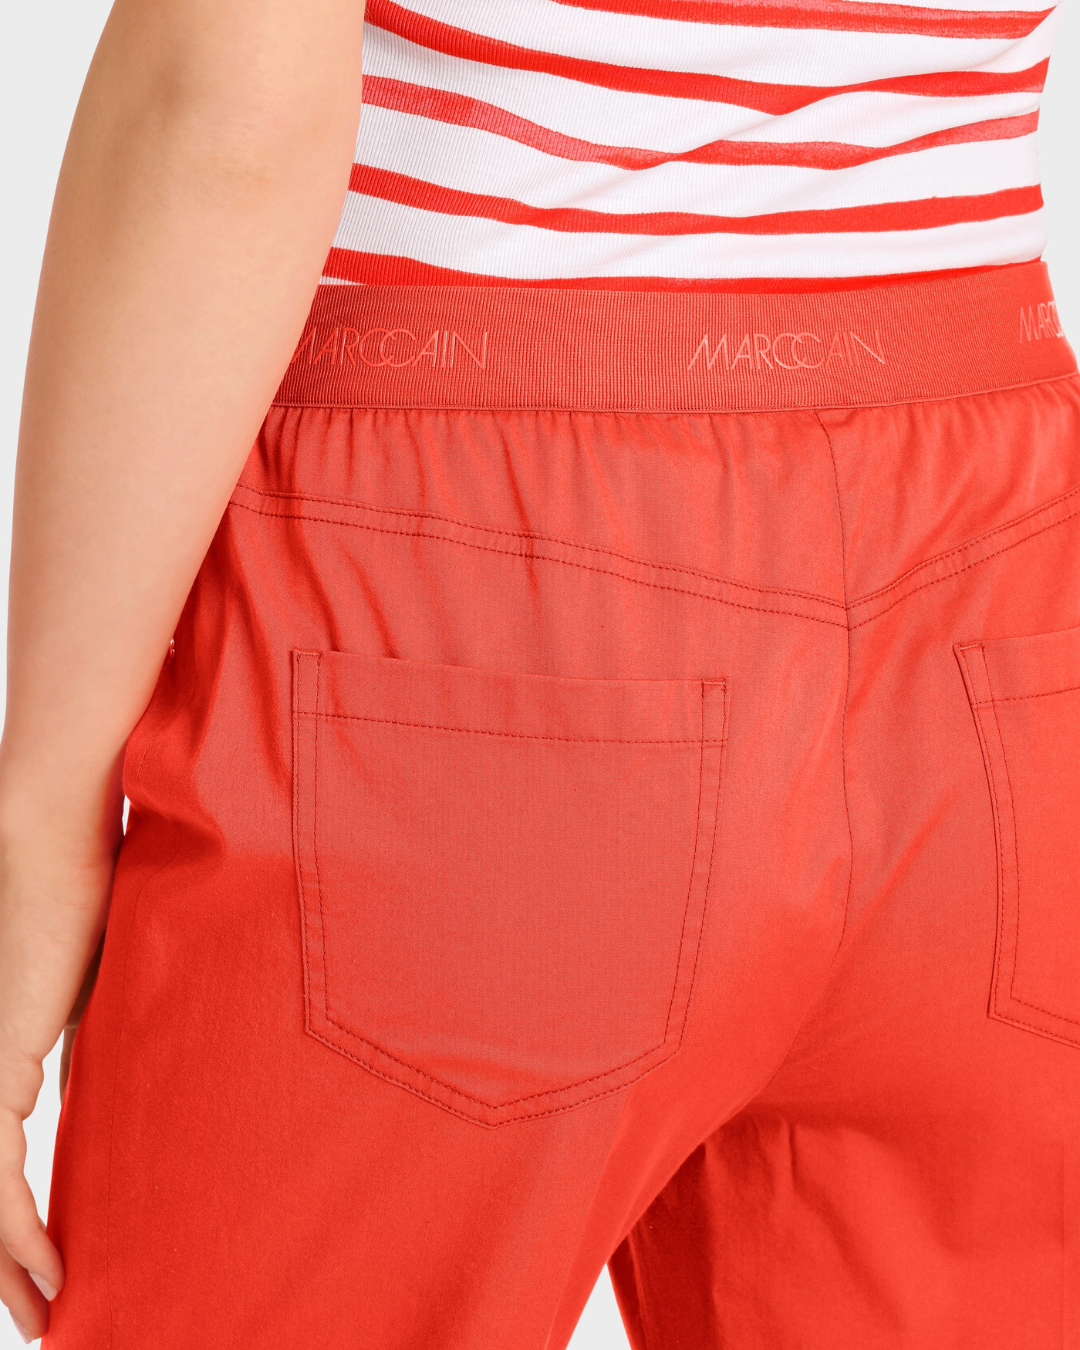 FATSA - Capri pants with crease